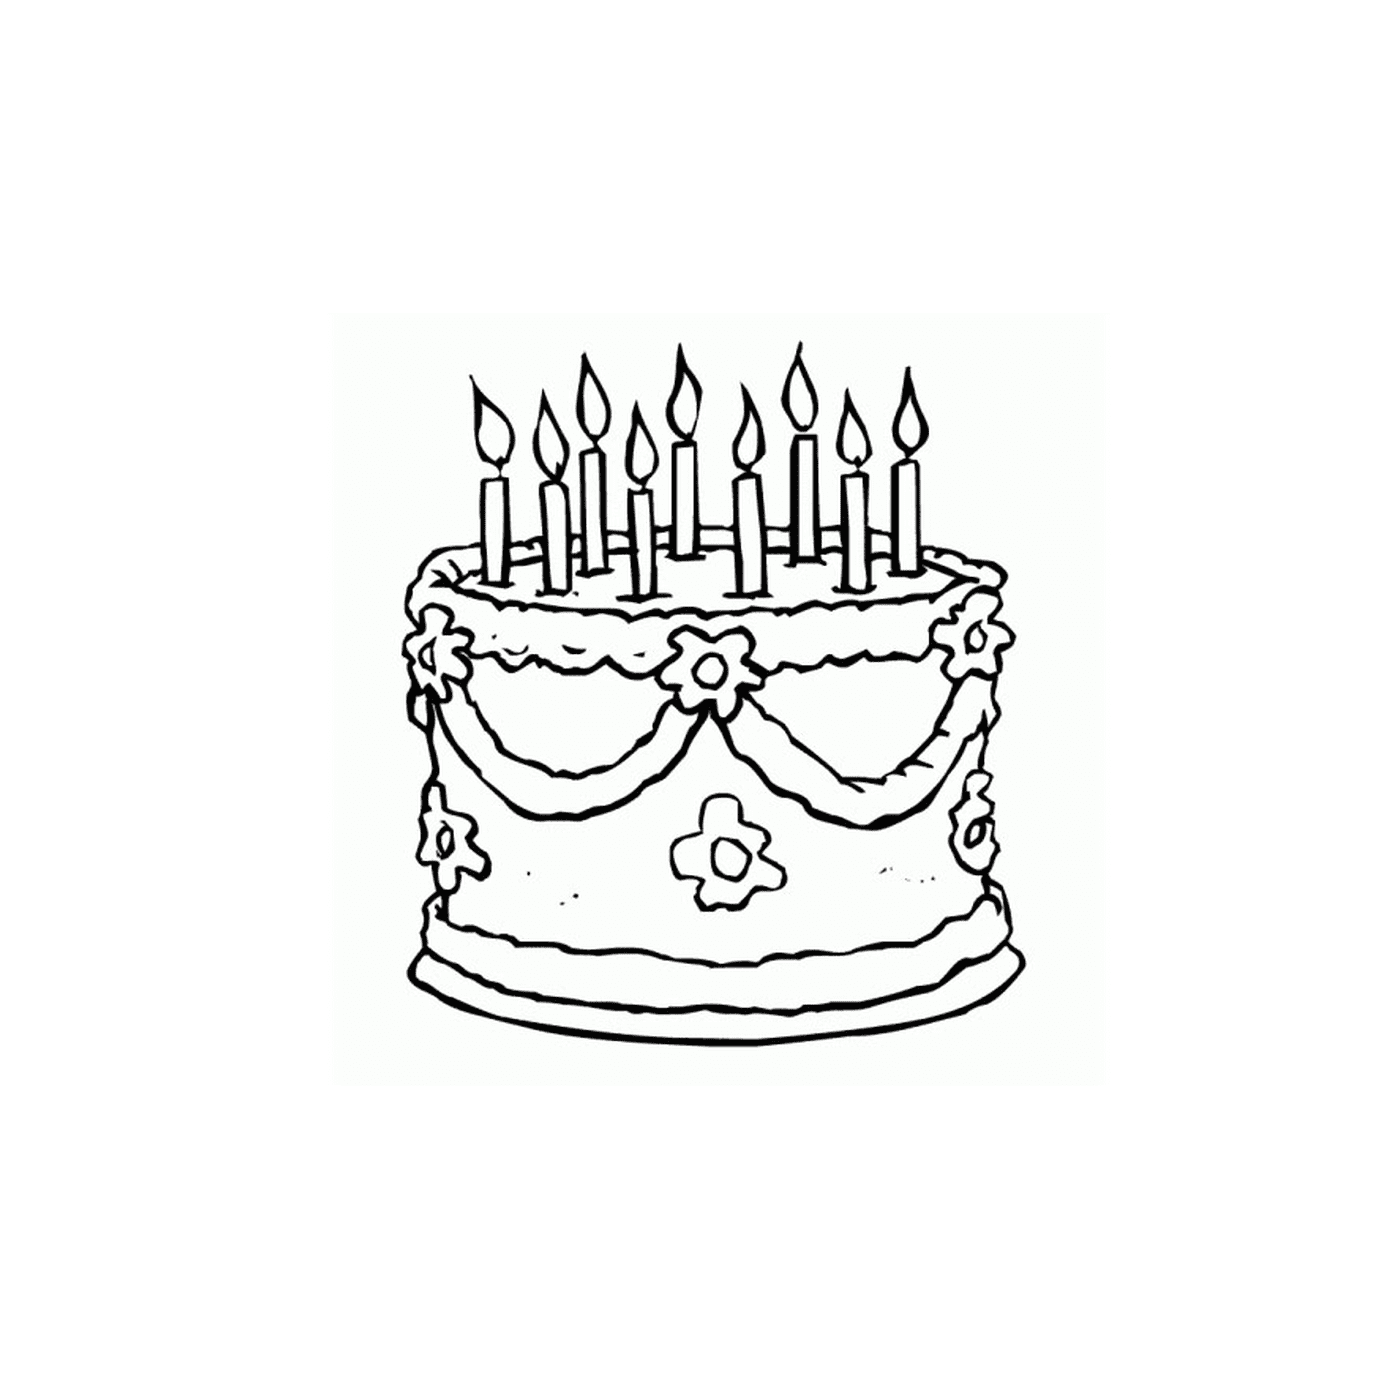  День рождения торт со свечками 